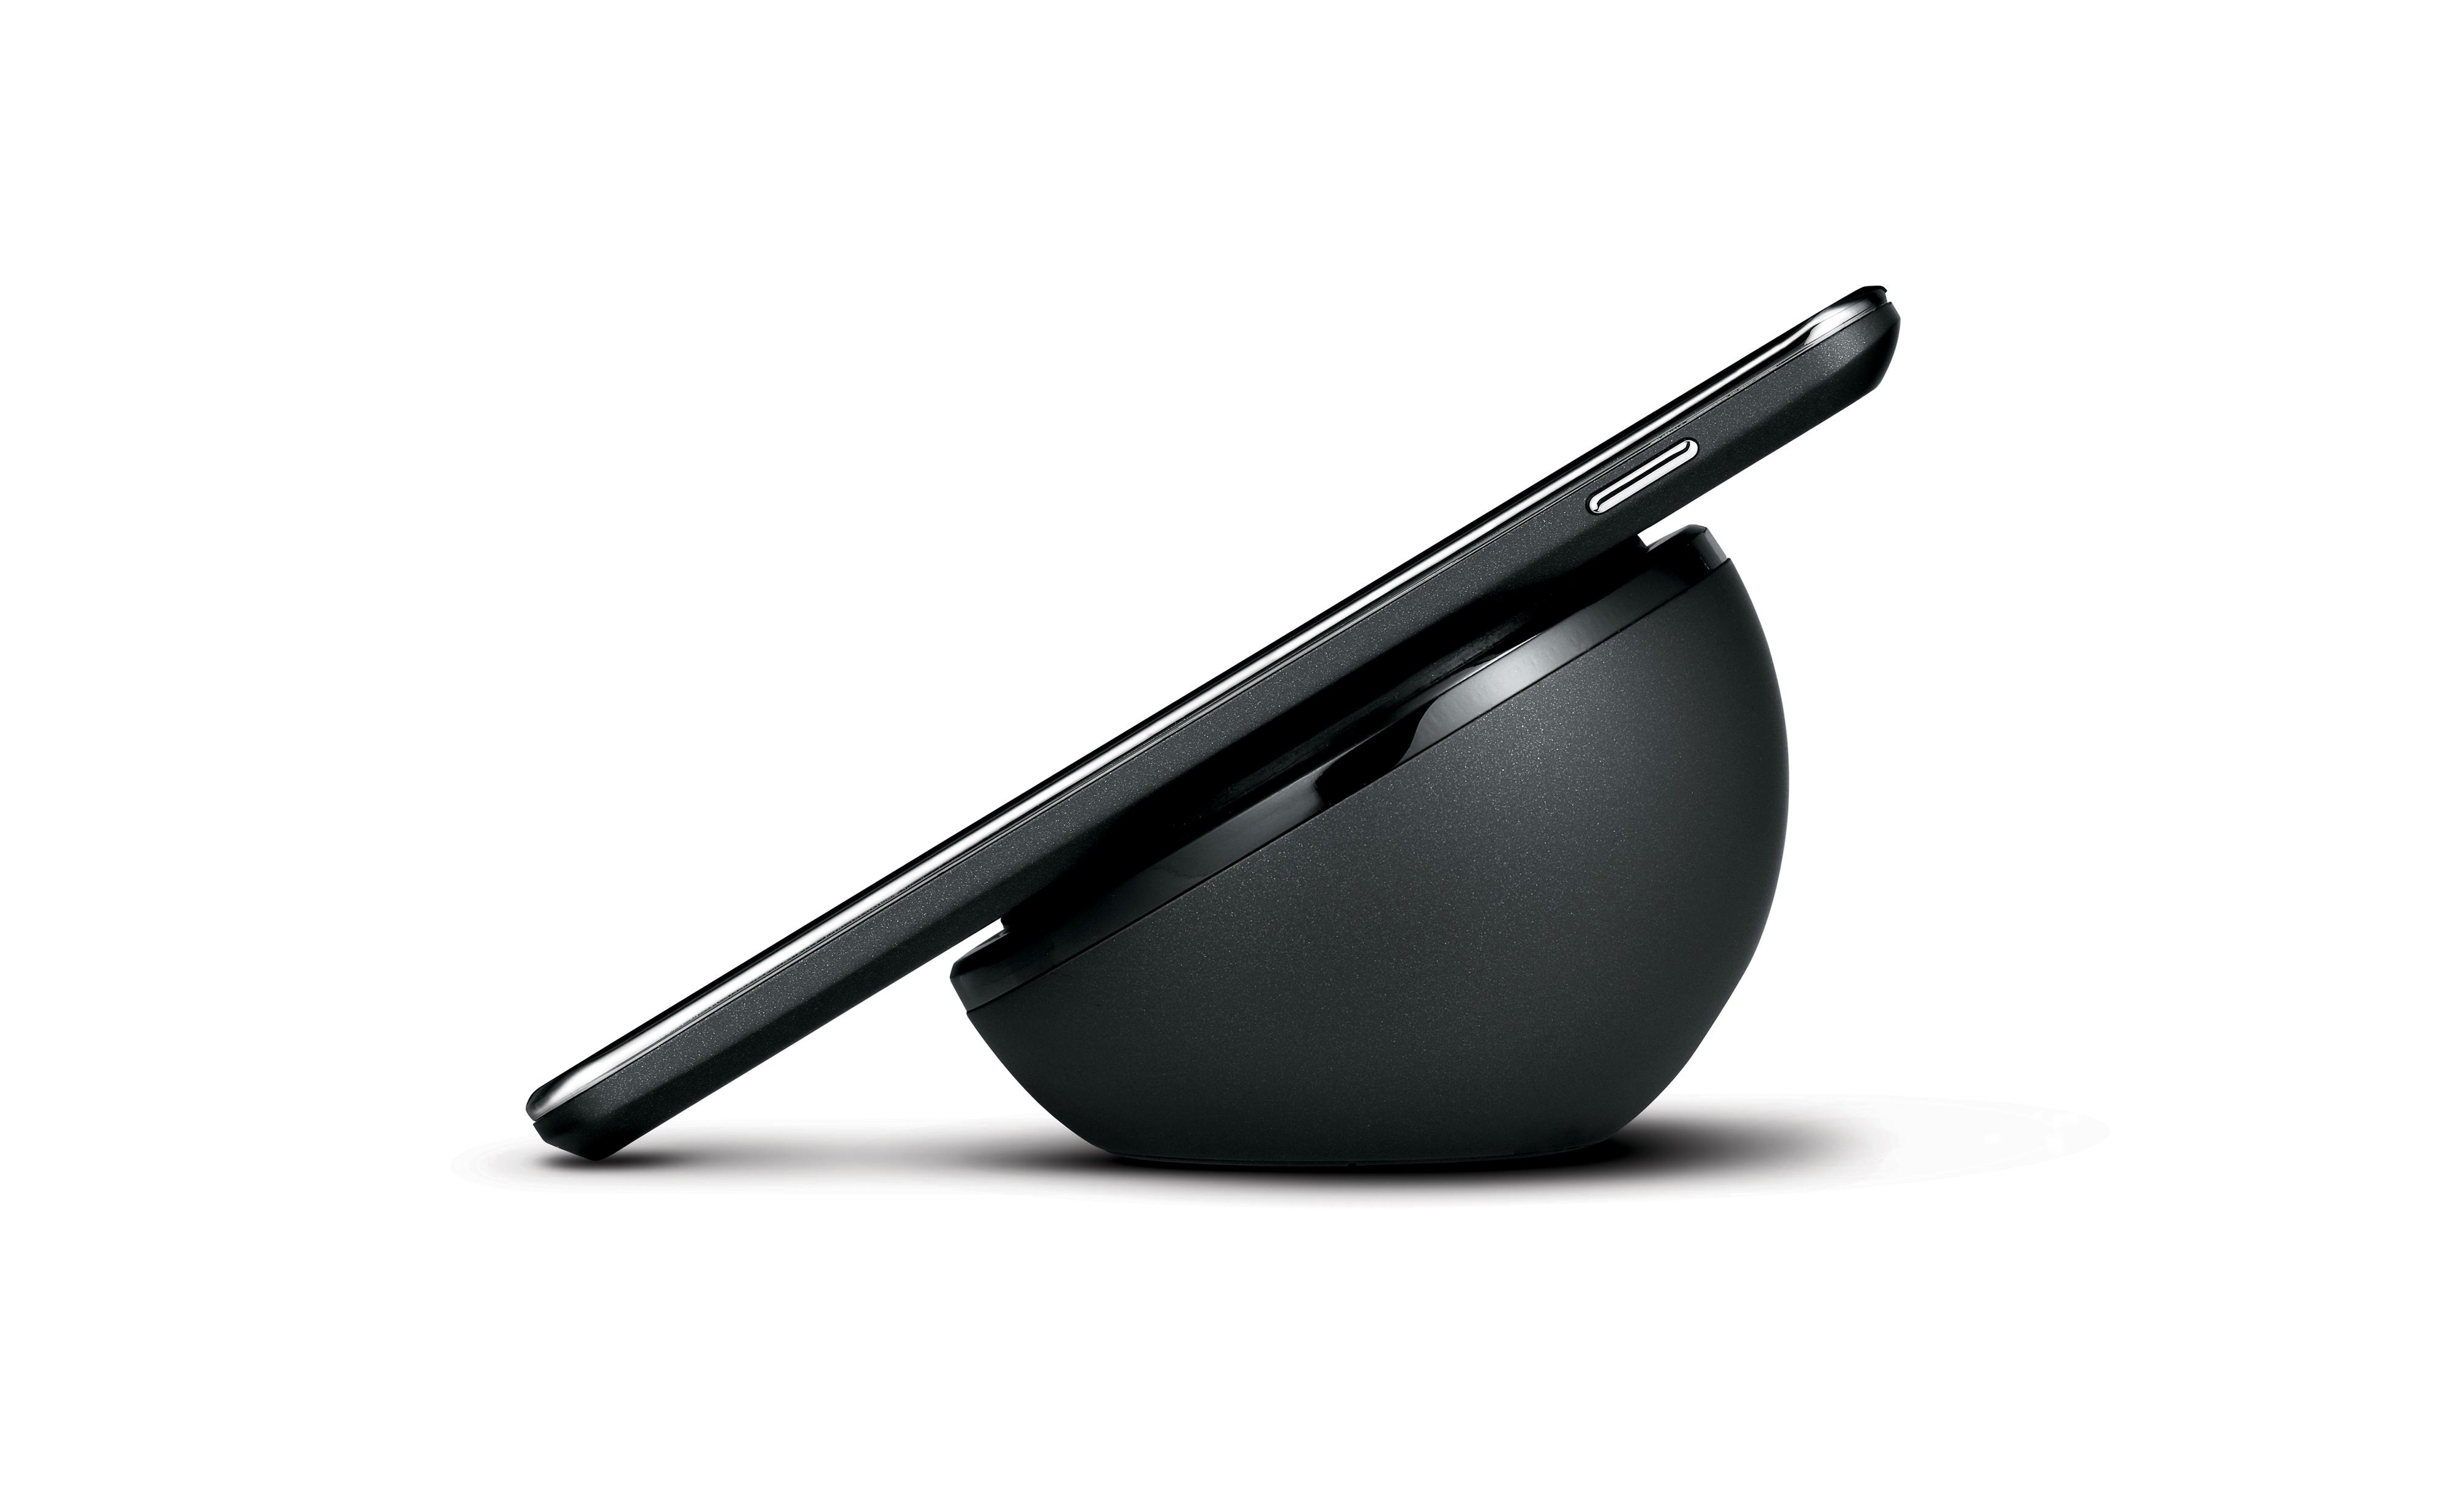 Vi tror dette er den trådløse laderen til Nexus 4, men vi fant ingen beskrivelser i LGs bildearkiv.